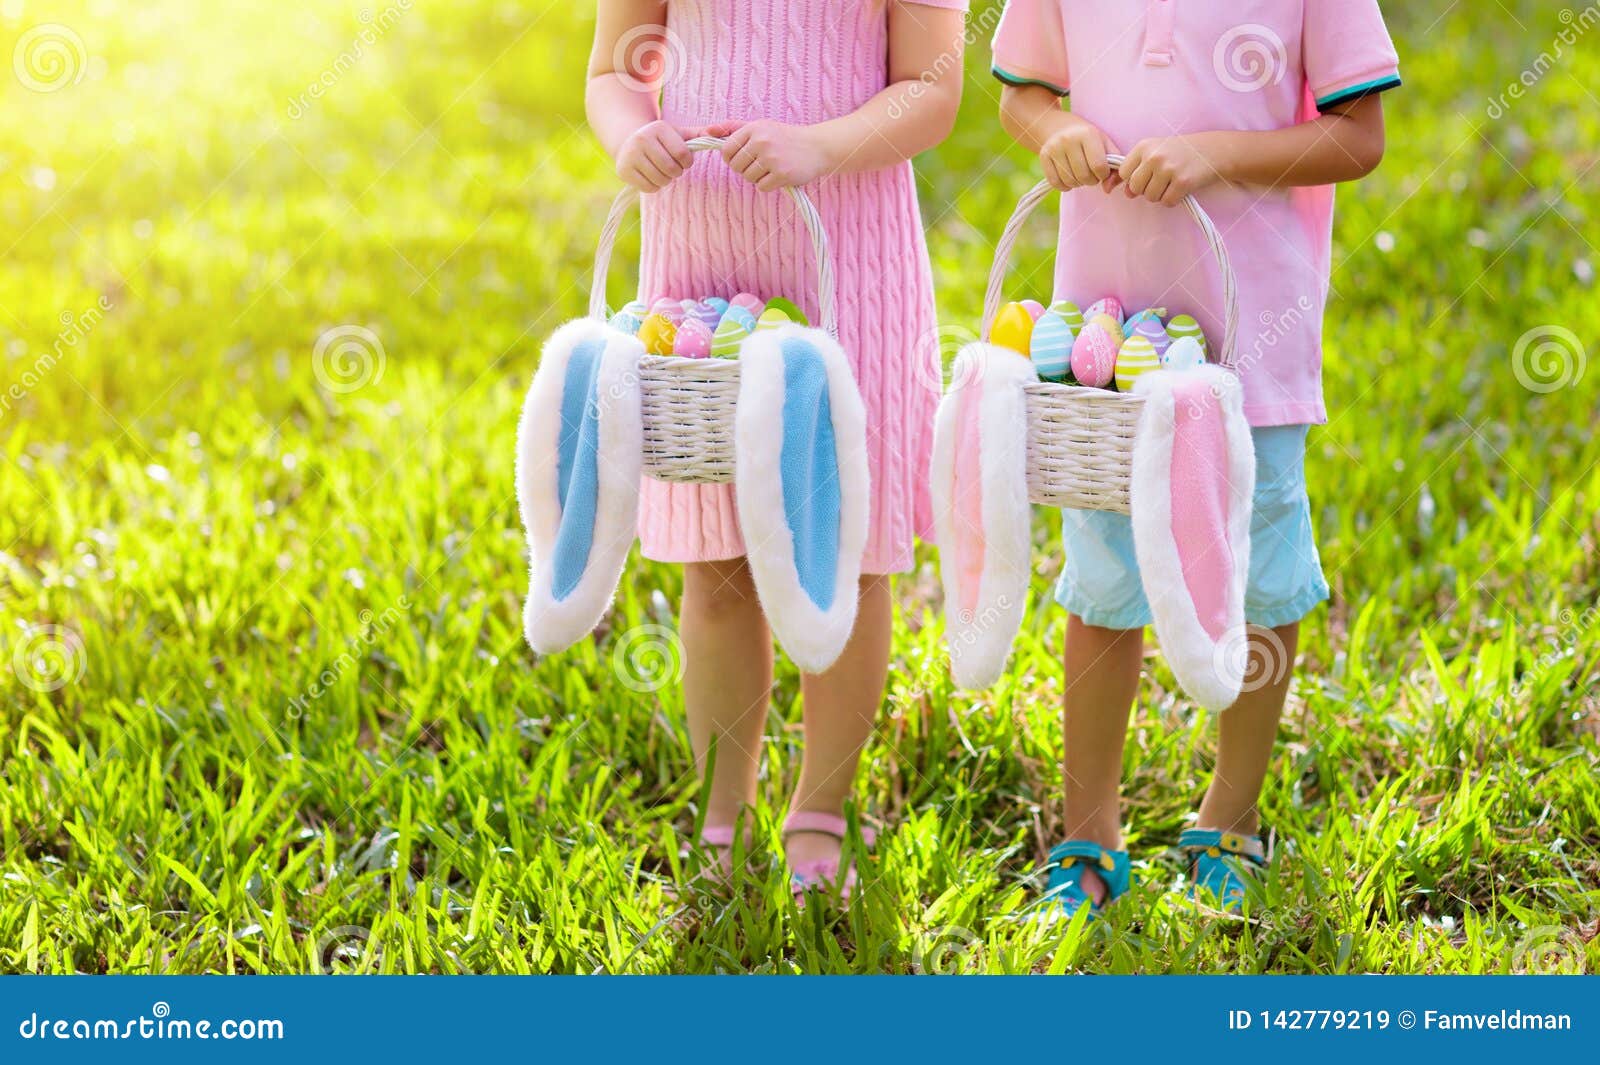 kids with eggs basket on easter egg hunt